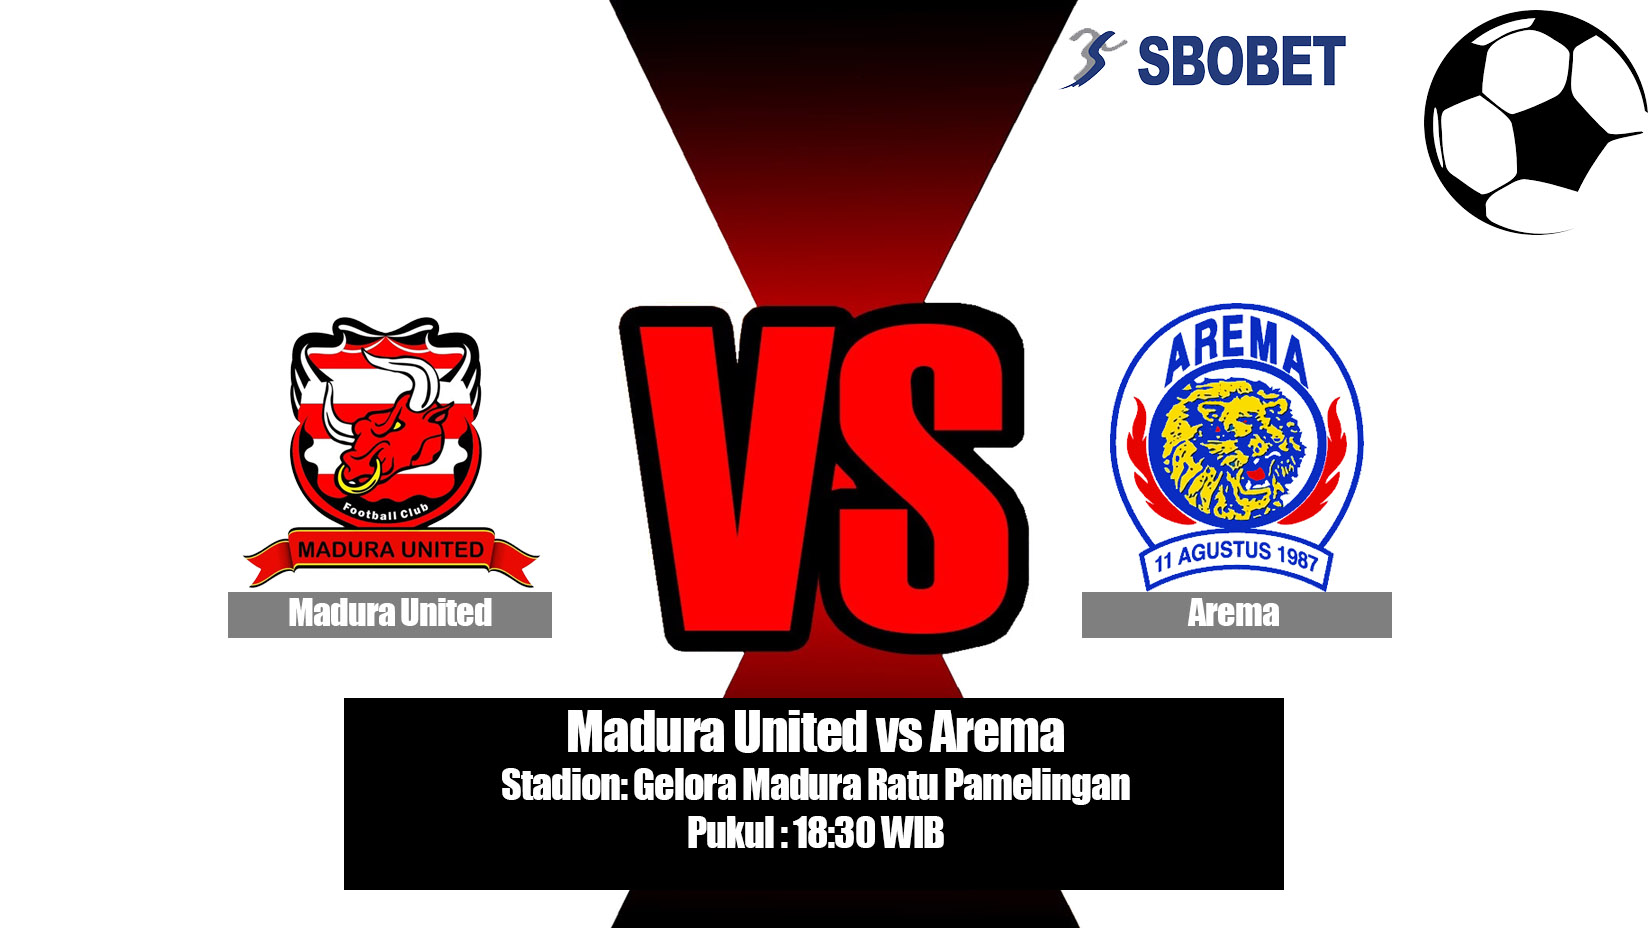 Prediksi Bola Madura United vs Arema 20 Juli 2019.jpg